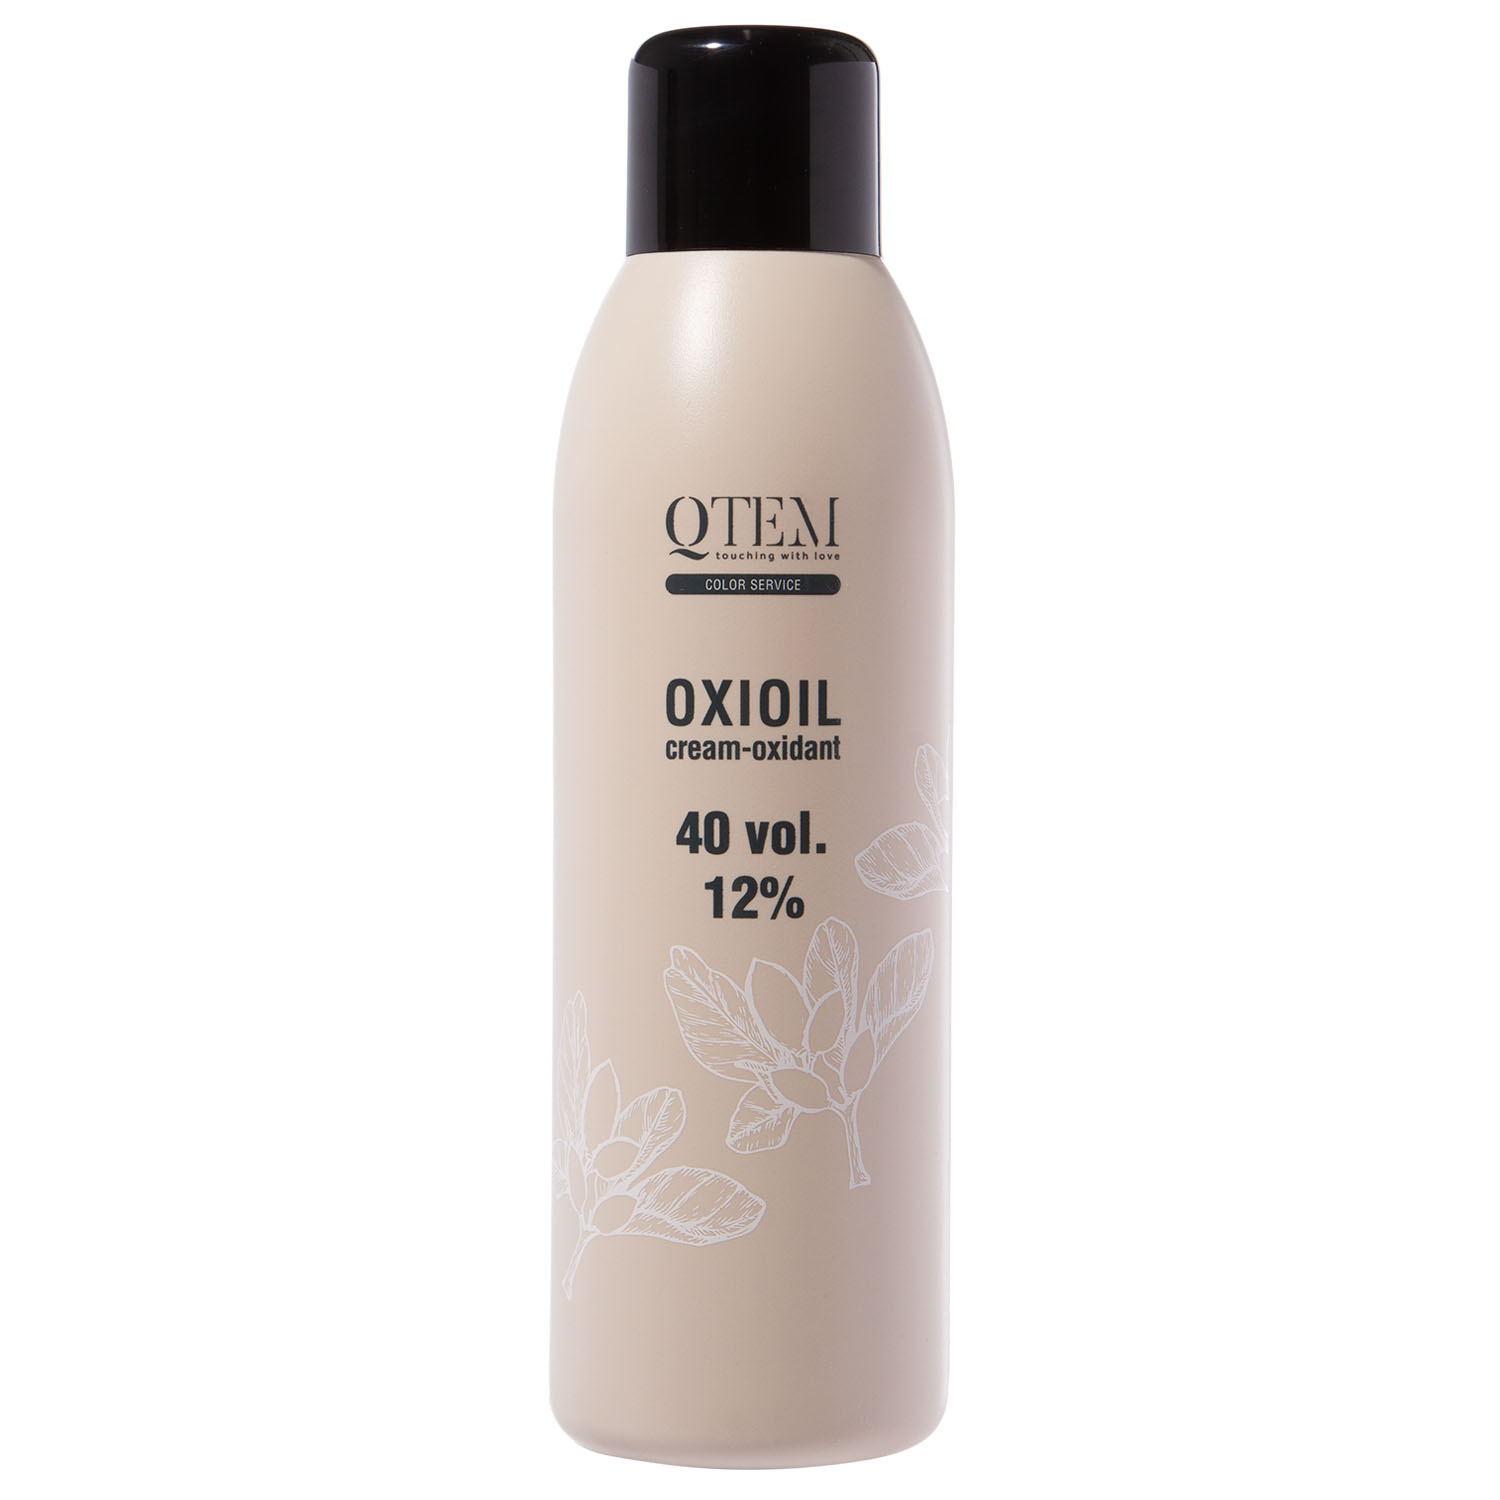 Qtem Универсальный крем-оксидант Oxioil 12% (40 Vol.), 1000 